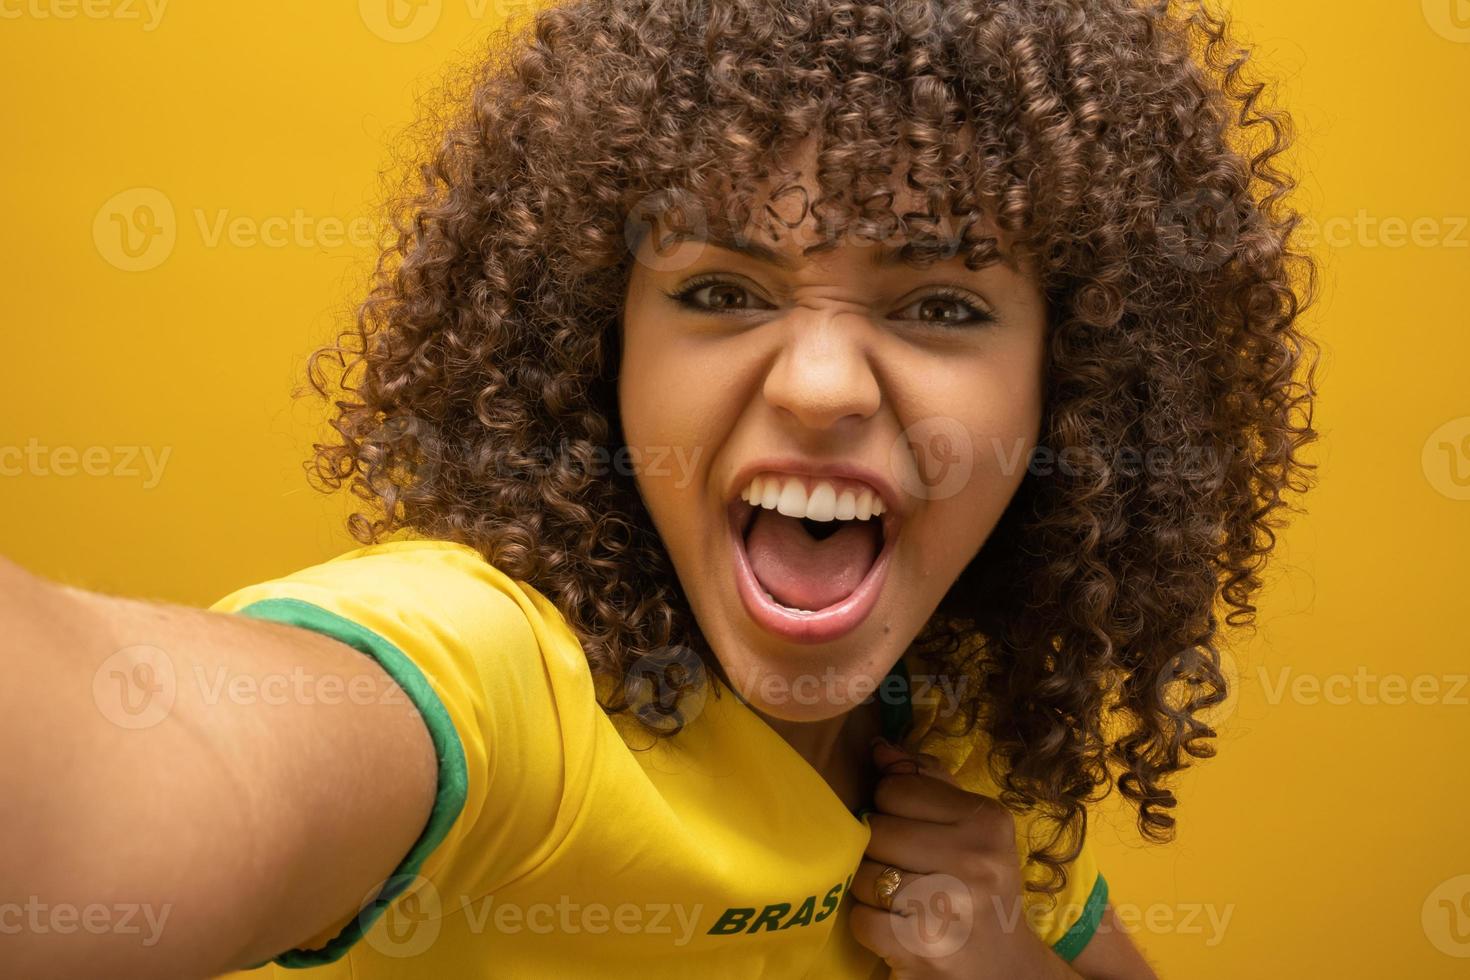 brazilie aanhanger. braziliaanse vrouw fan vieren op voetbal voetbalwedstrijd op gele achtergrond. braziliaanse kleuren. foto